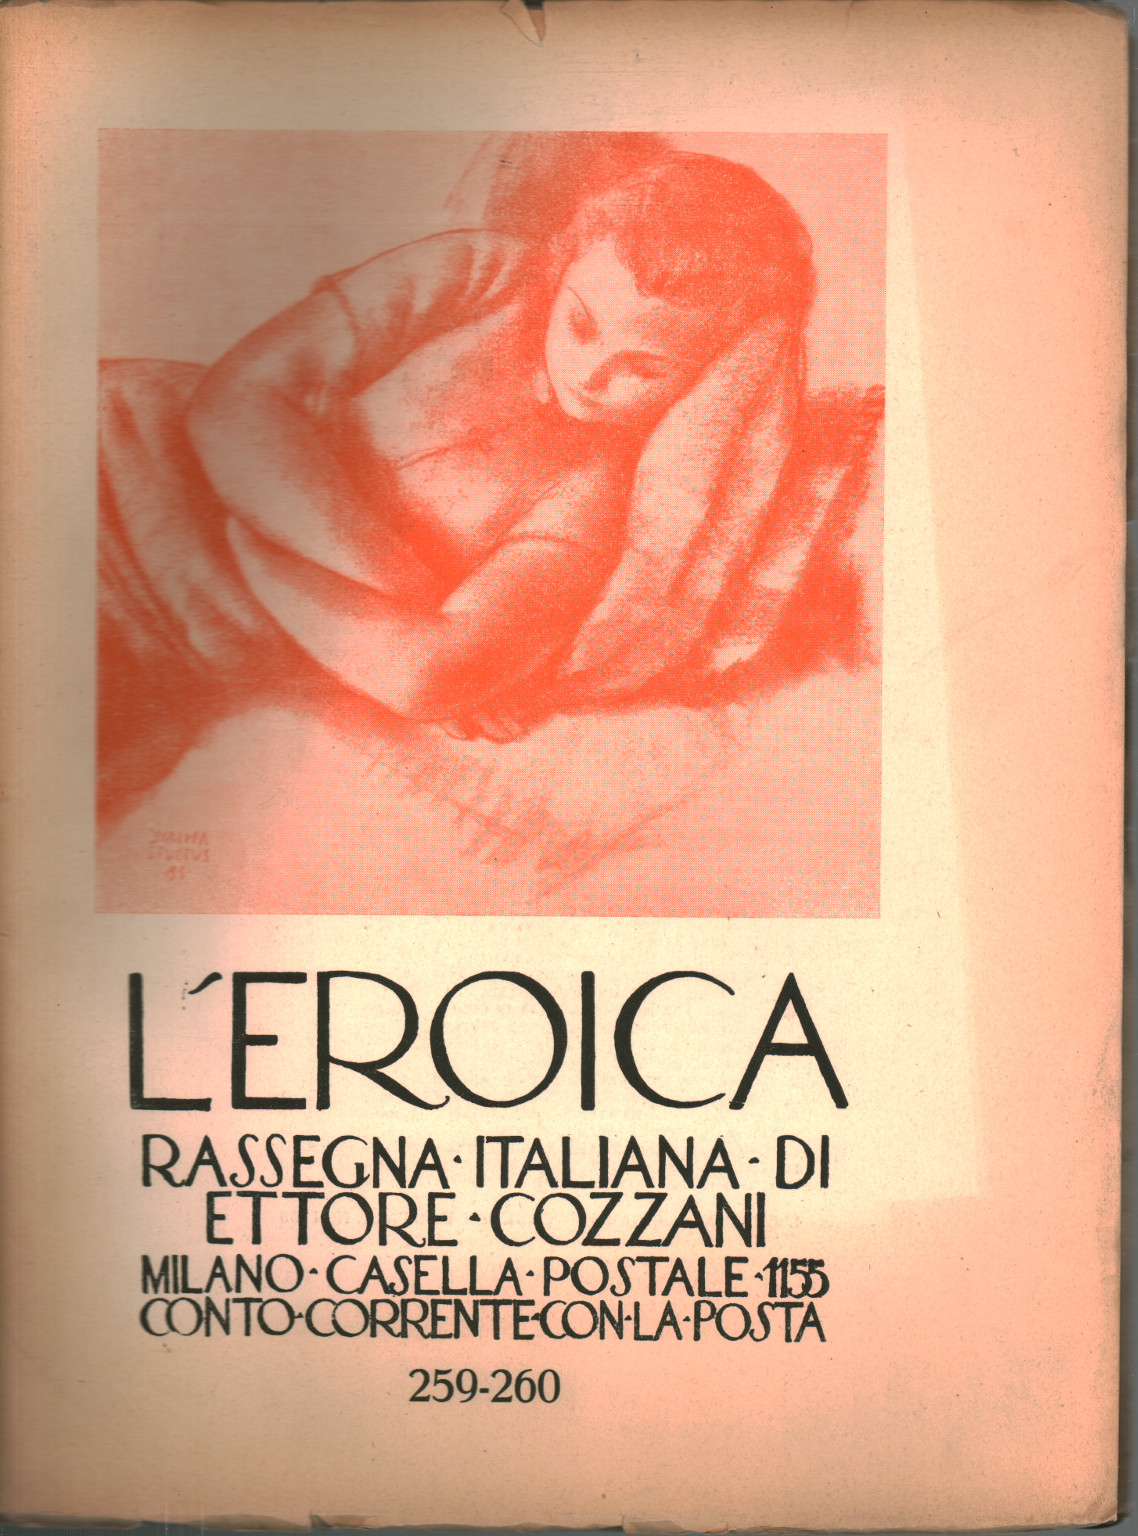 La heroica. Reseña italiana di Ettore Cozzani. Ann, s.una.